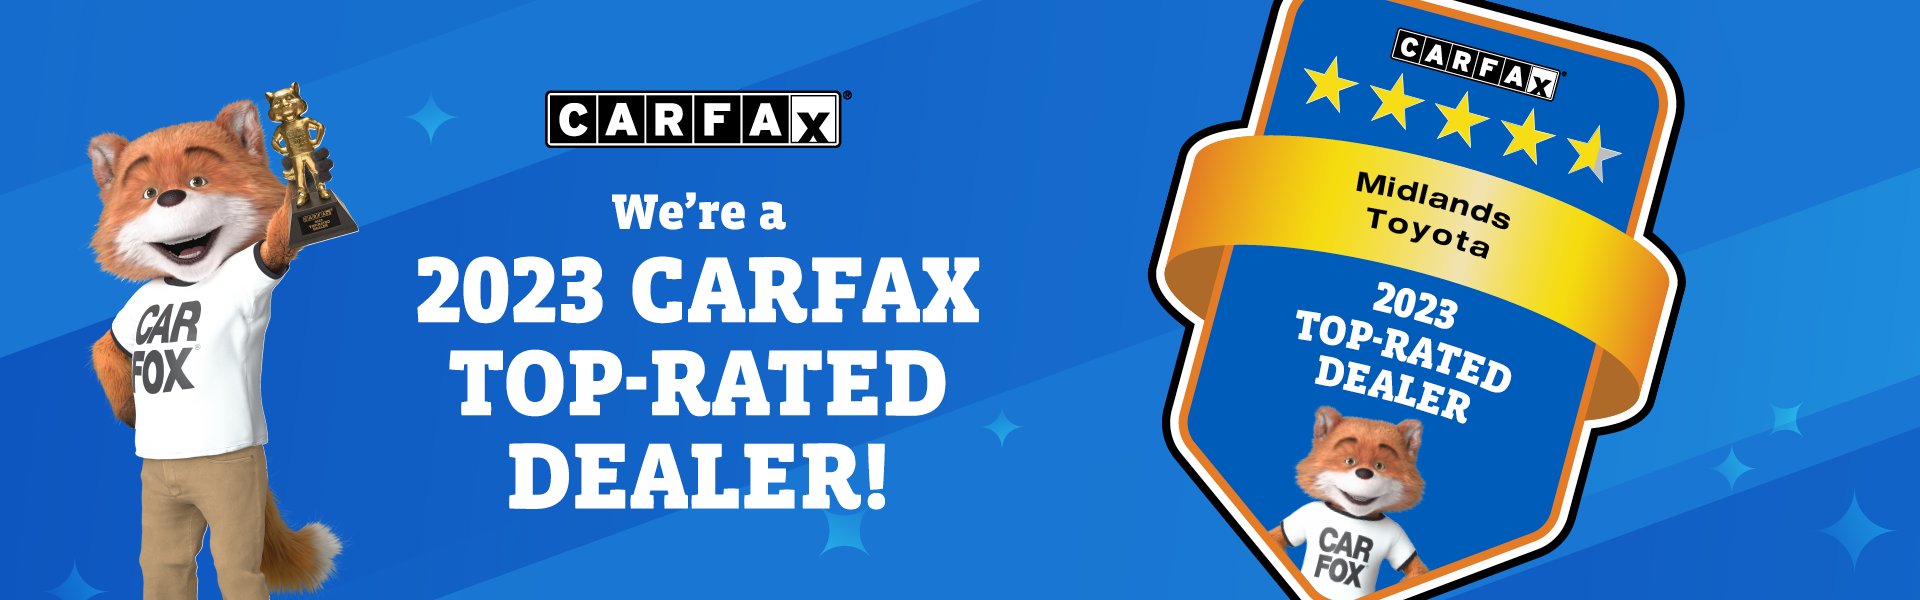 Carfax top dealer